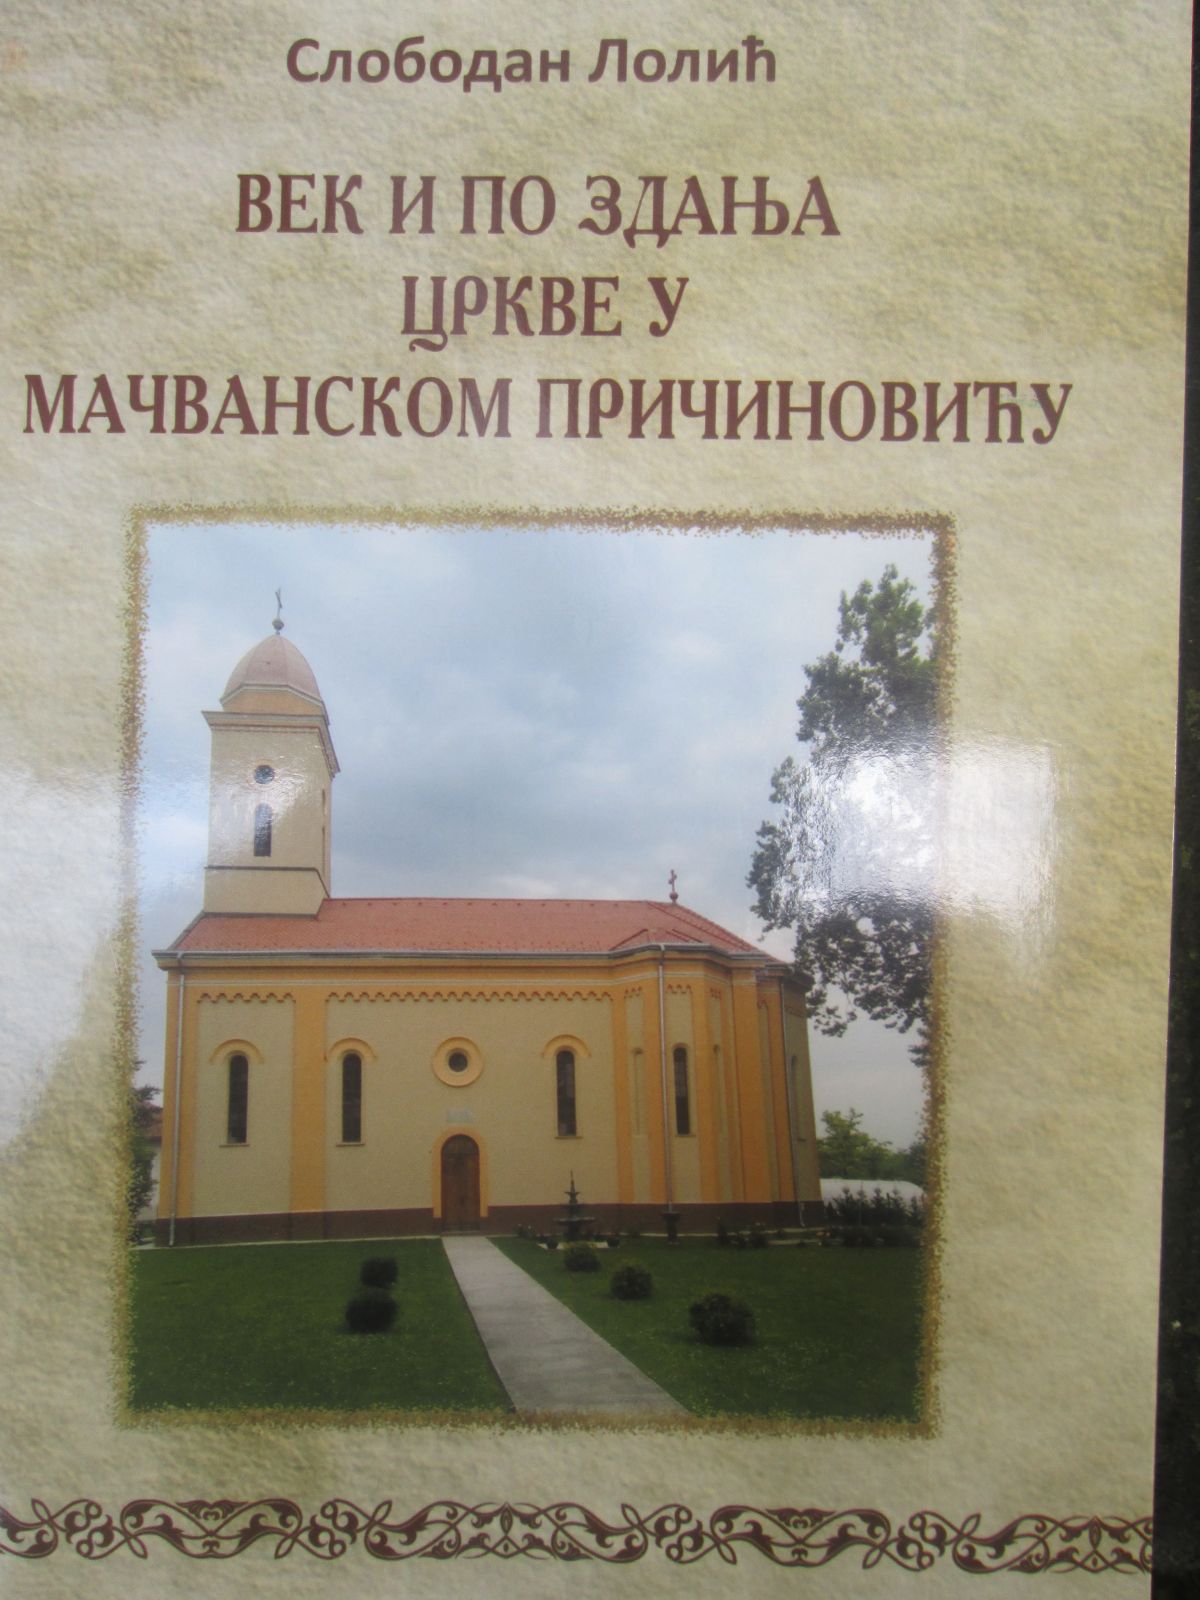 Причиновчани  отели цркву  Табановчанима?